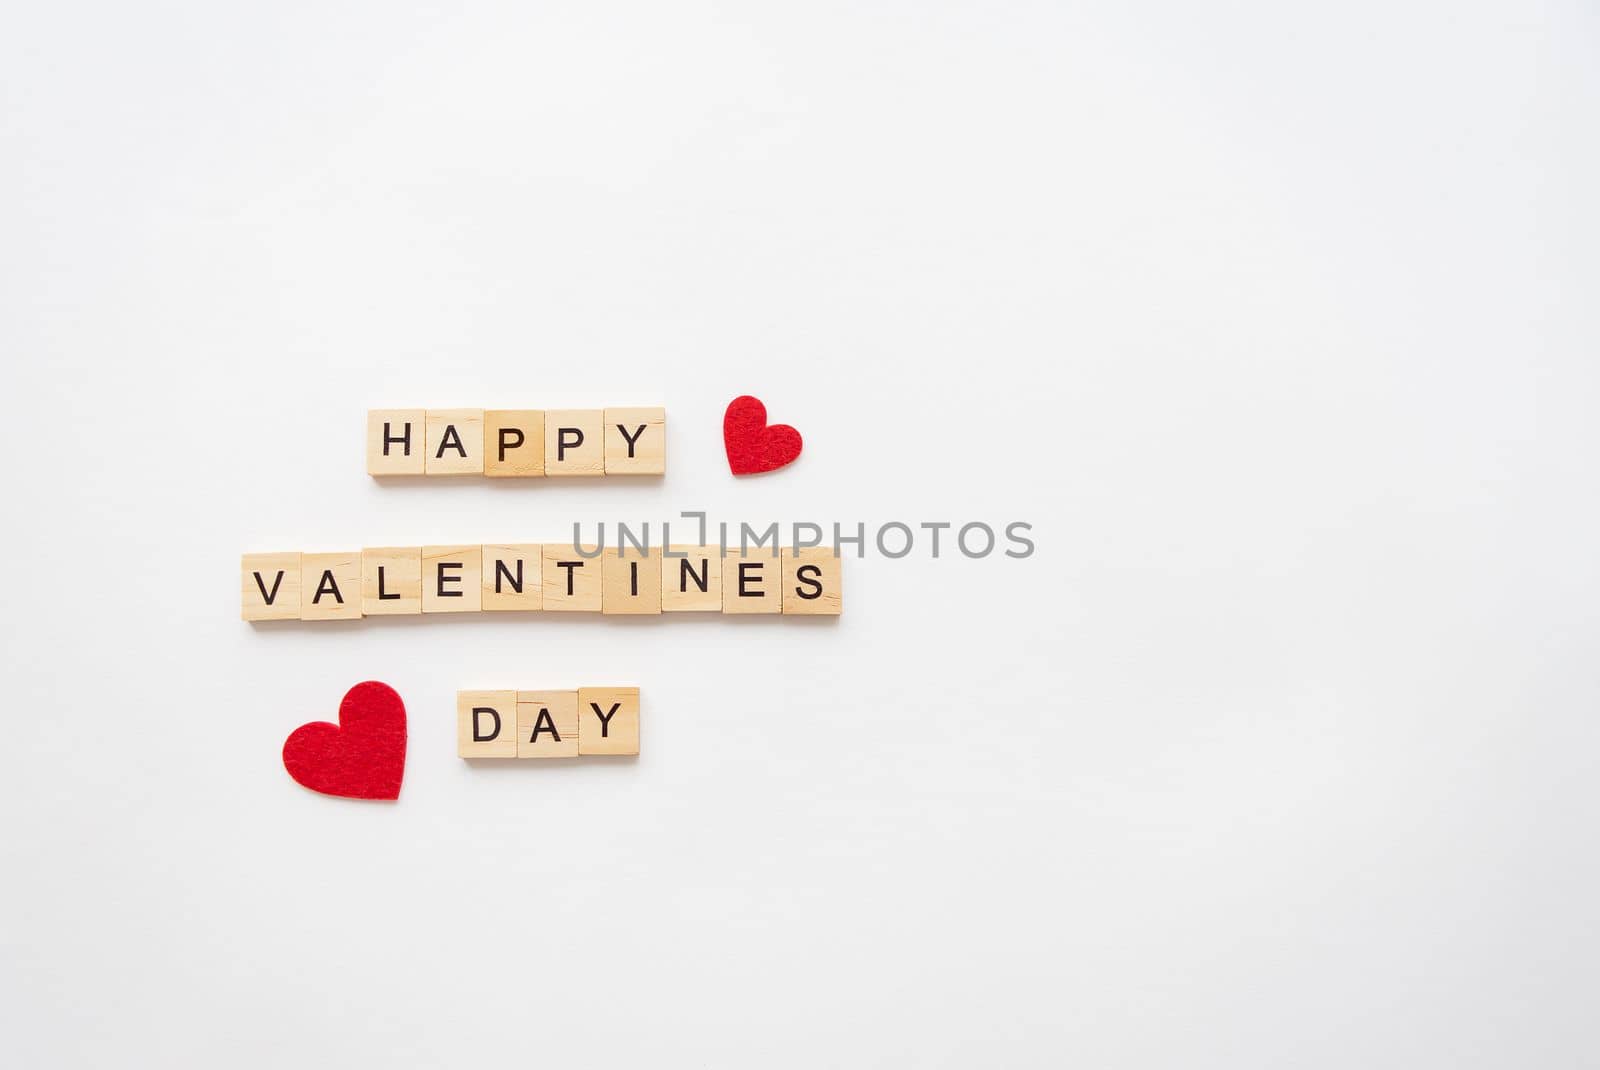 Postcard Happy Valentine's Day. Wooden lettering Happy Valentine's Day. Red heart on a white background